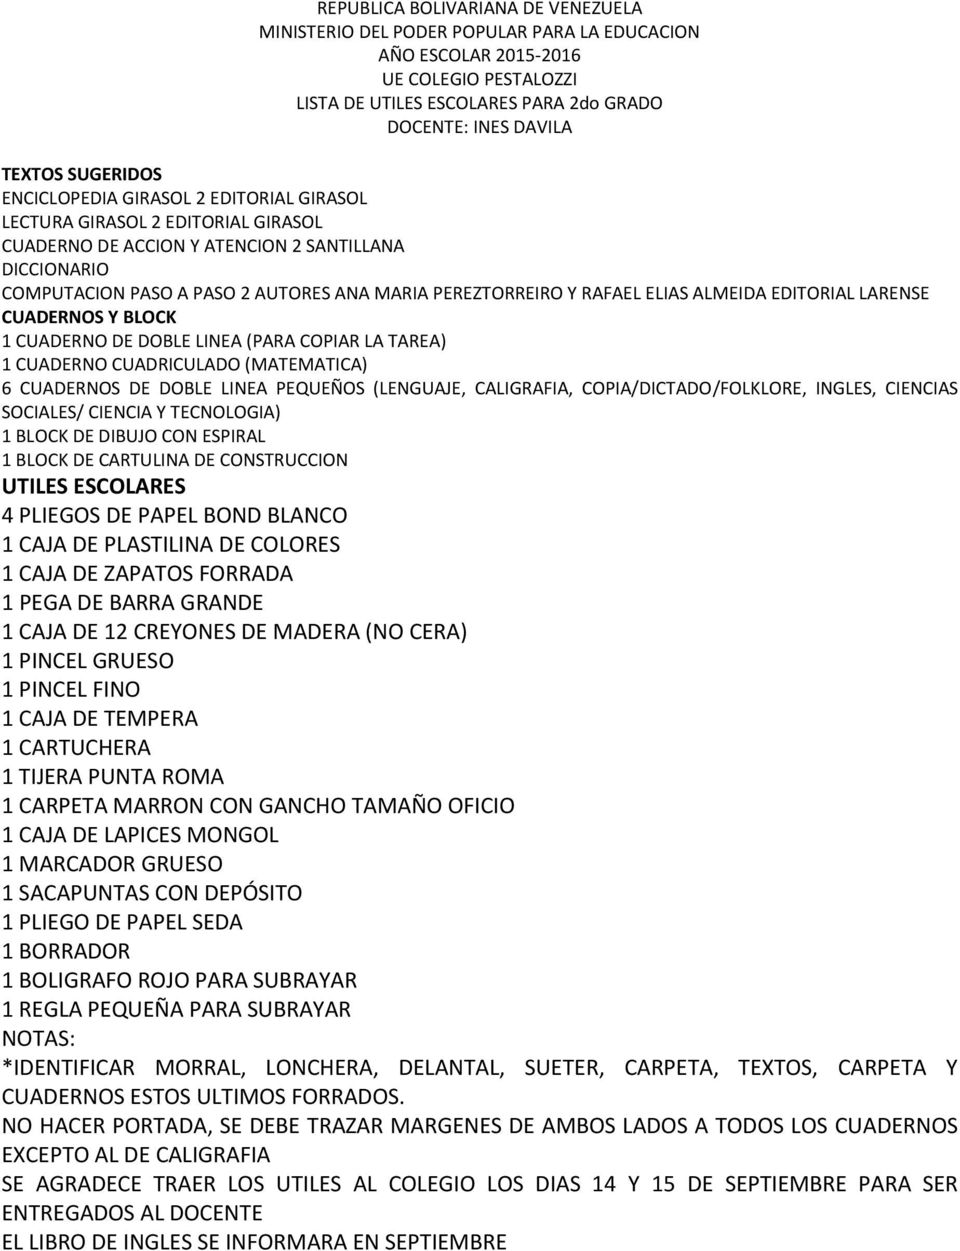 1 CUADERNO CUADRICULADO (MATEMATICA) 6 CUADERNOS DE DOBLE LINEA PEQUEÑOS (LENGUAJE, CALIGRAFIA, COPIA/DICTADO/FOLKLORE, INGLES, CIENCIAS SOCIALES/ CIENCIA Y TECNOLOGIA) 1 BLOCK DE CARTULINA DE